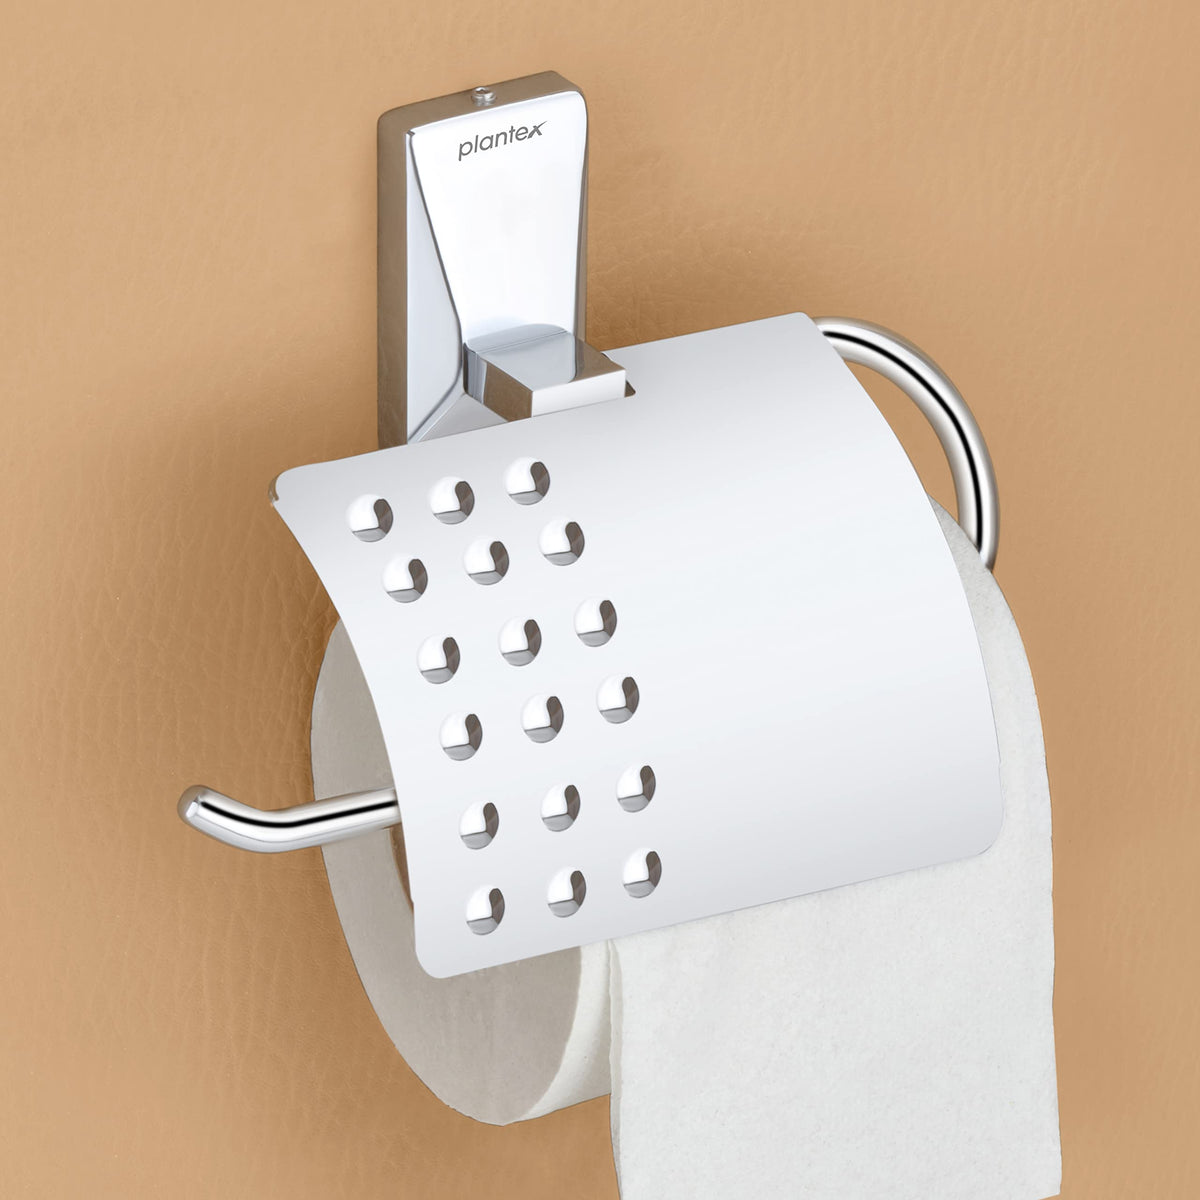 Plantex 304 Grade Stainless Steel Crystal Toilet Paper Holder/Tissue Paper Roll Holder for Bathroom (Chrome)